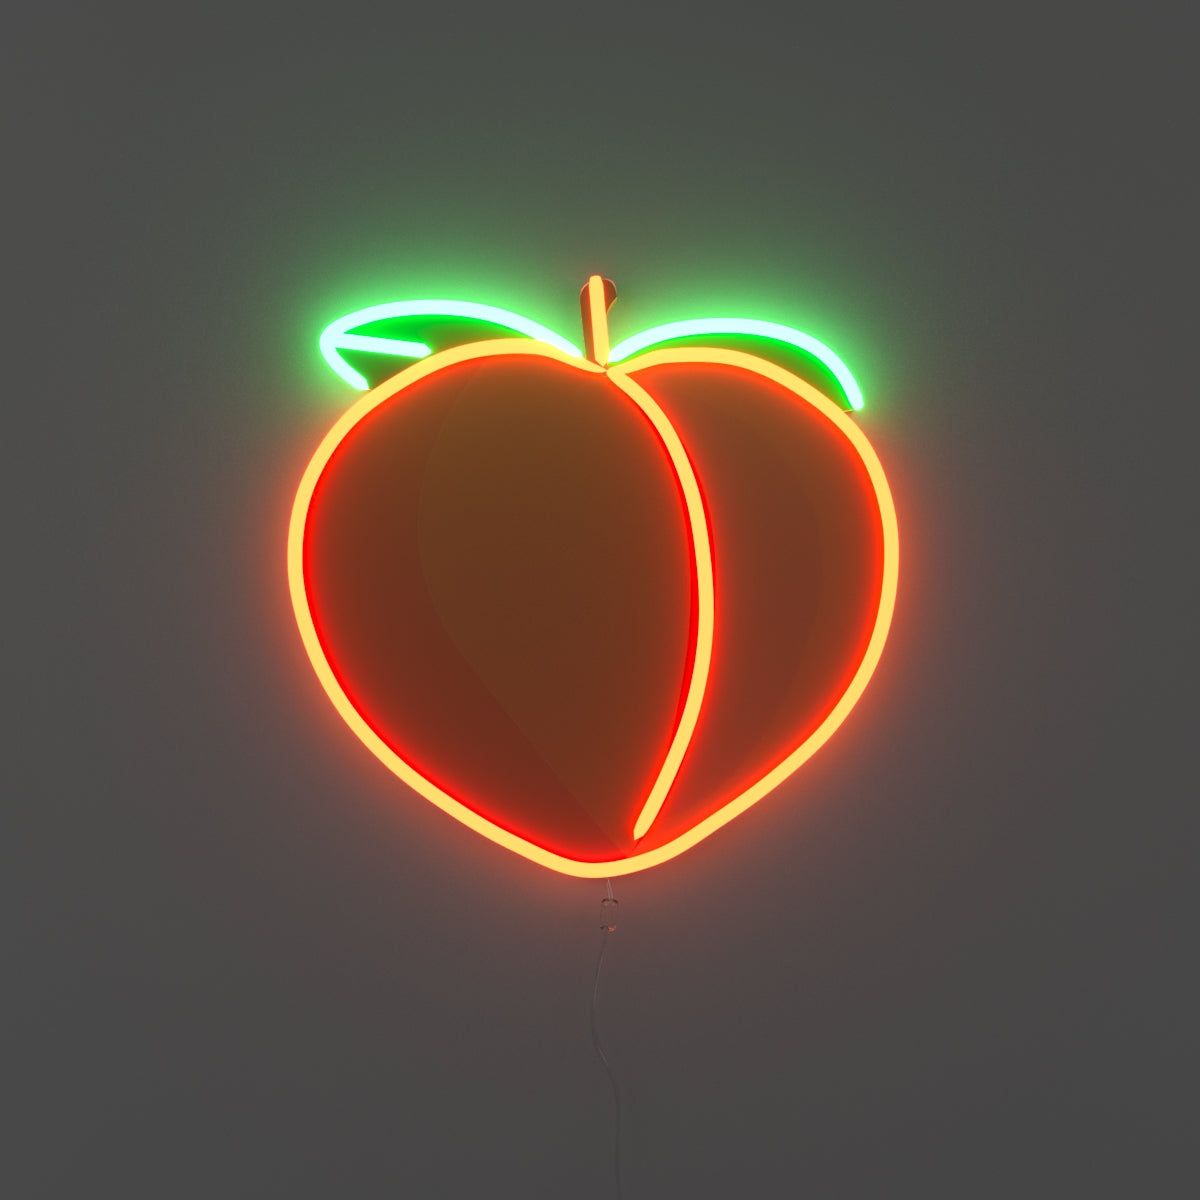 A neon sign of a peach - Neon orange